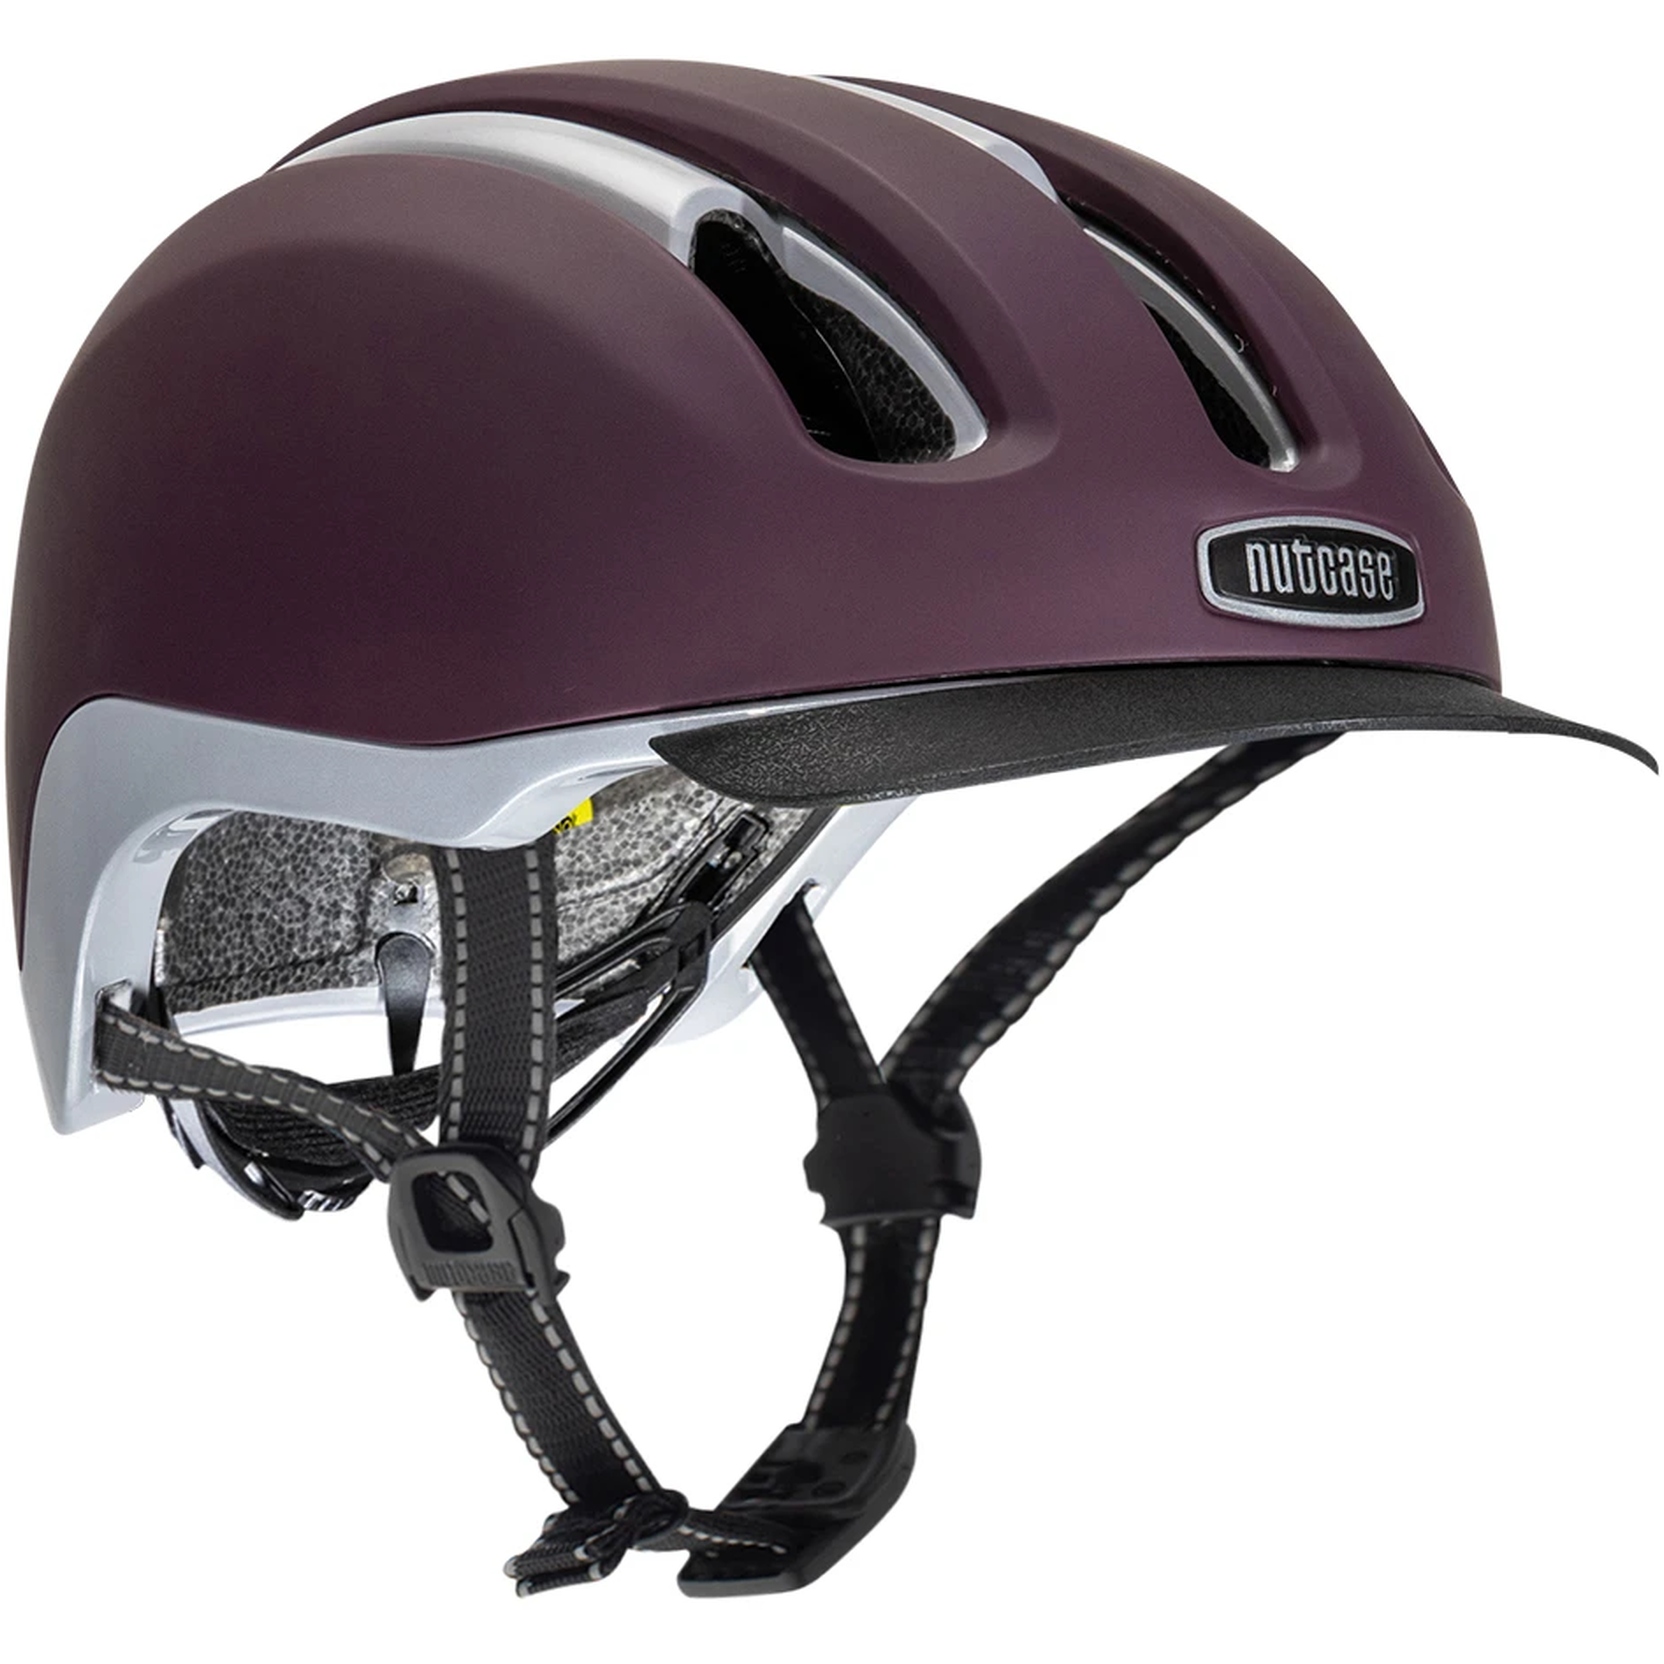 Productfoto van Nutcase Vio Adventure MIPS Helmet - Plum